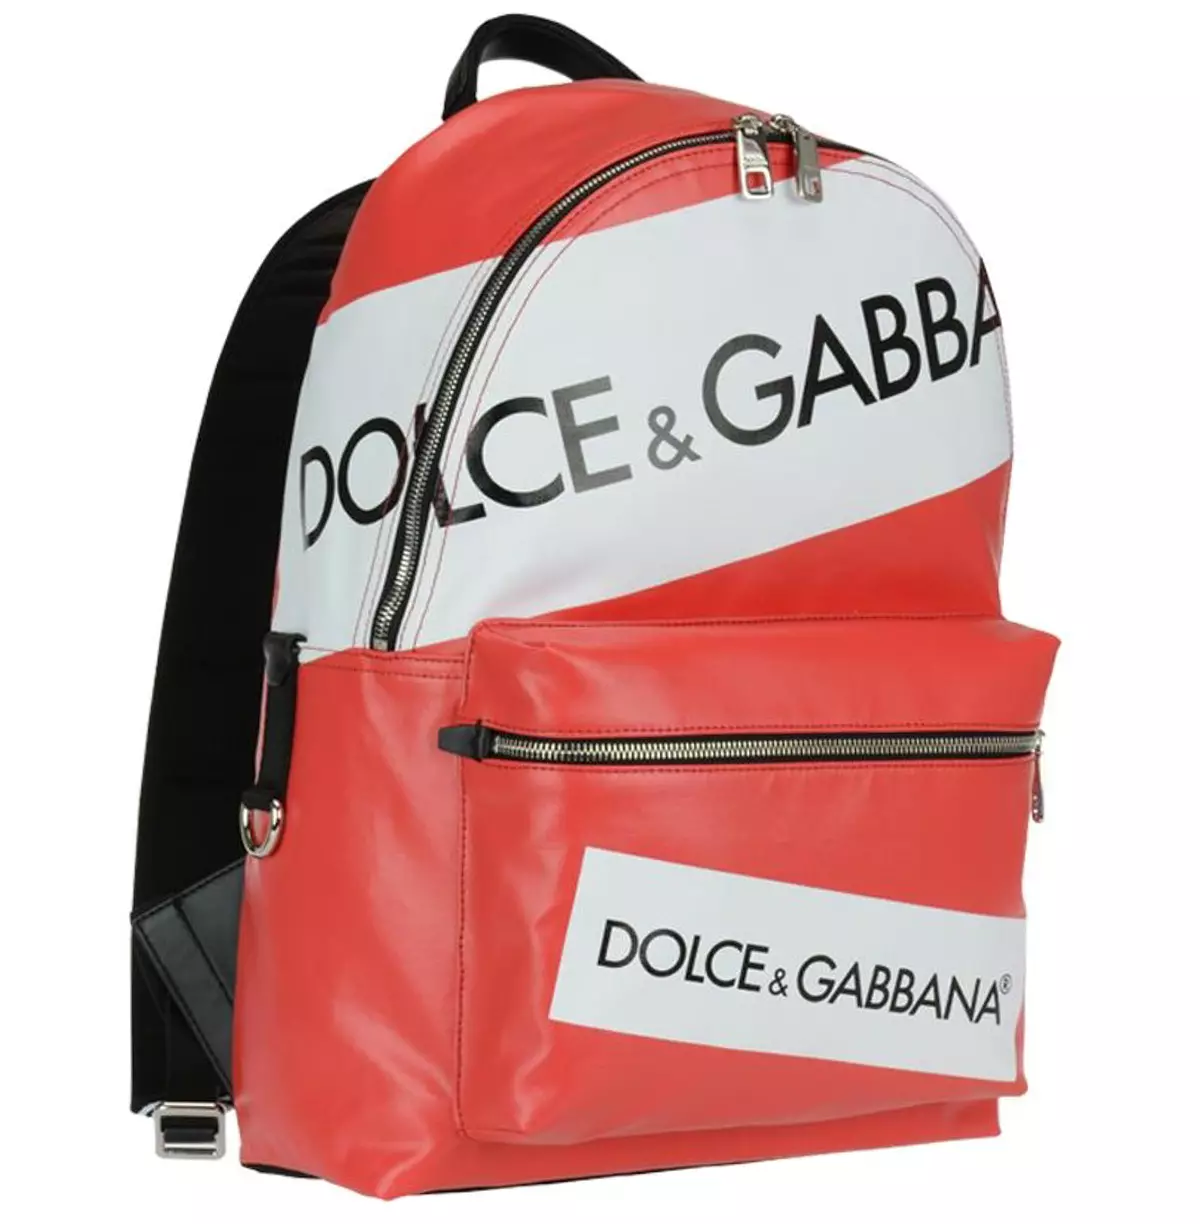 Dolce & Gabbana Backpacks: Málaí Backpacks Mná agus Fir, Dubha agus Dearg, Leathar agus samhlacha eile. Conas an bunaidh a idirdhealú ón gcóip? 2559_8